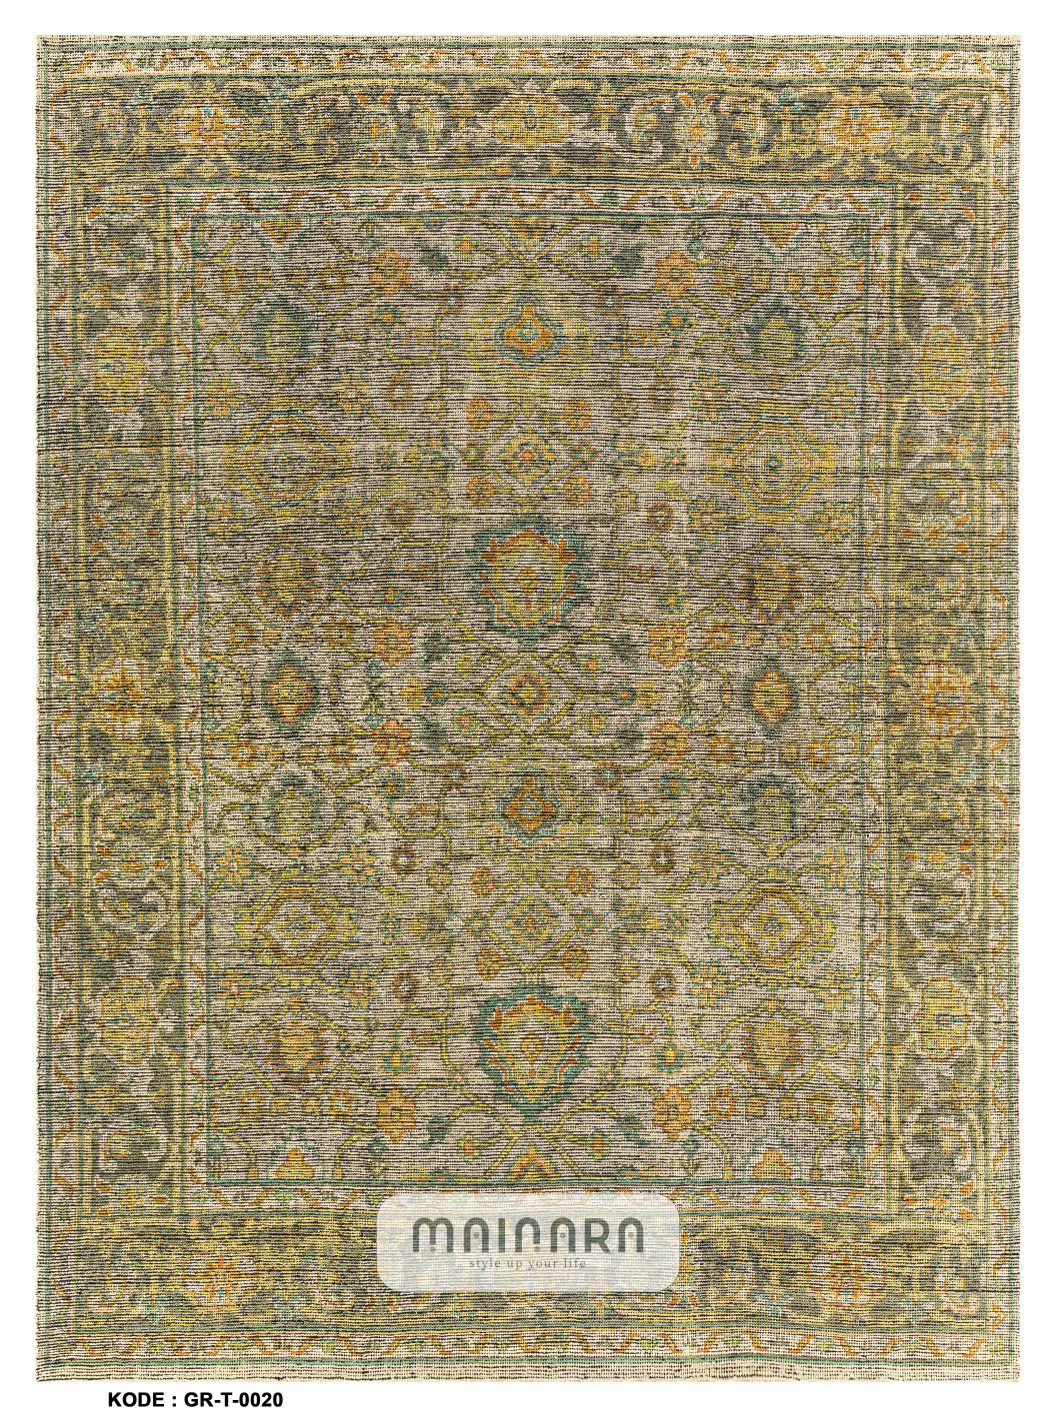 Karpet Tradisional (GR-T-0020) - Green,Yellow